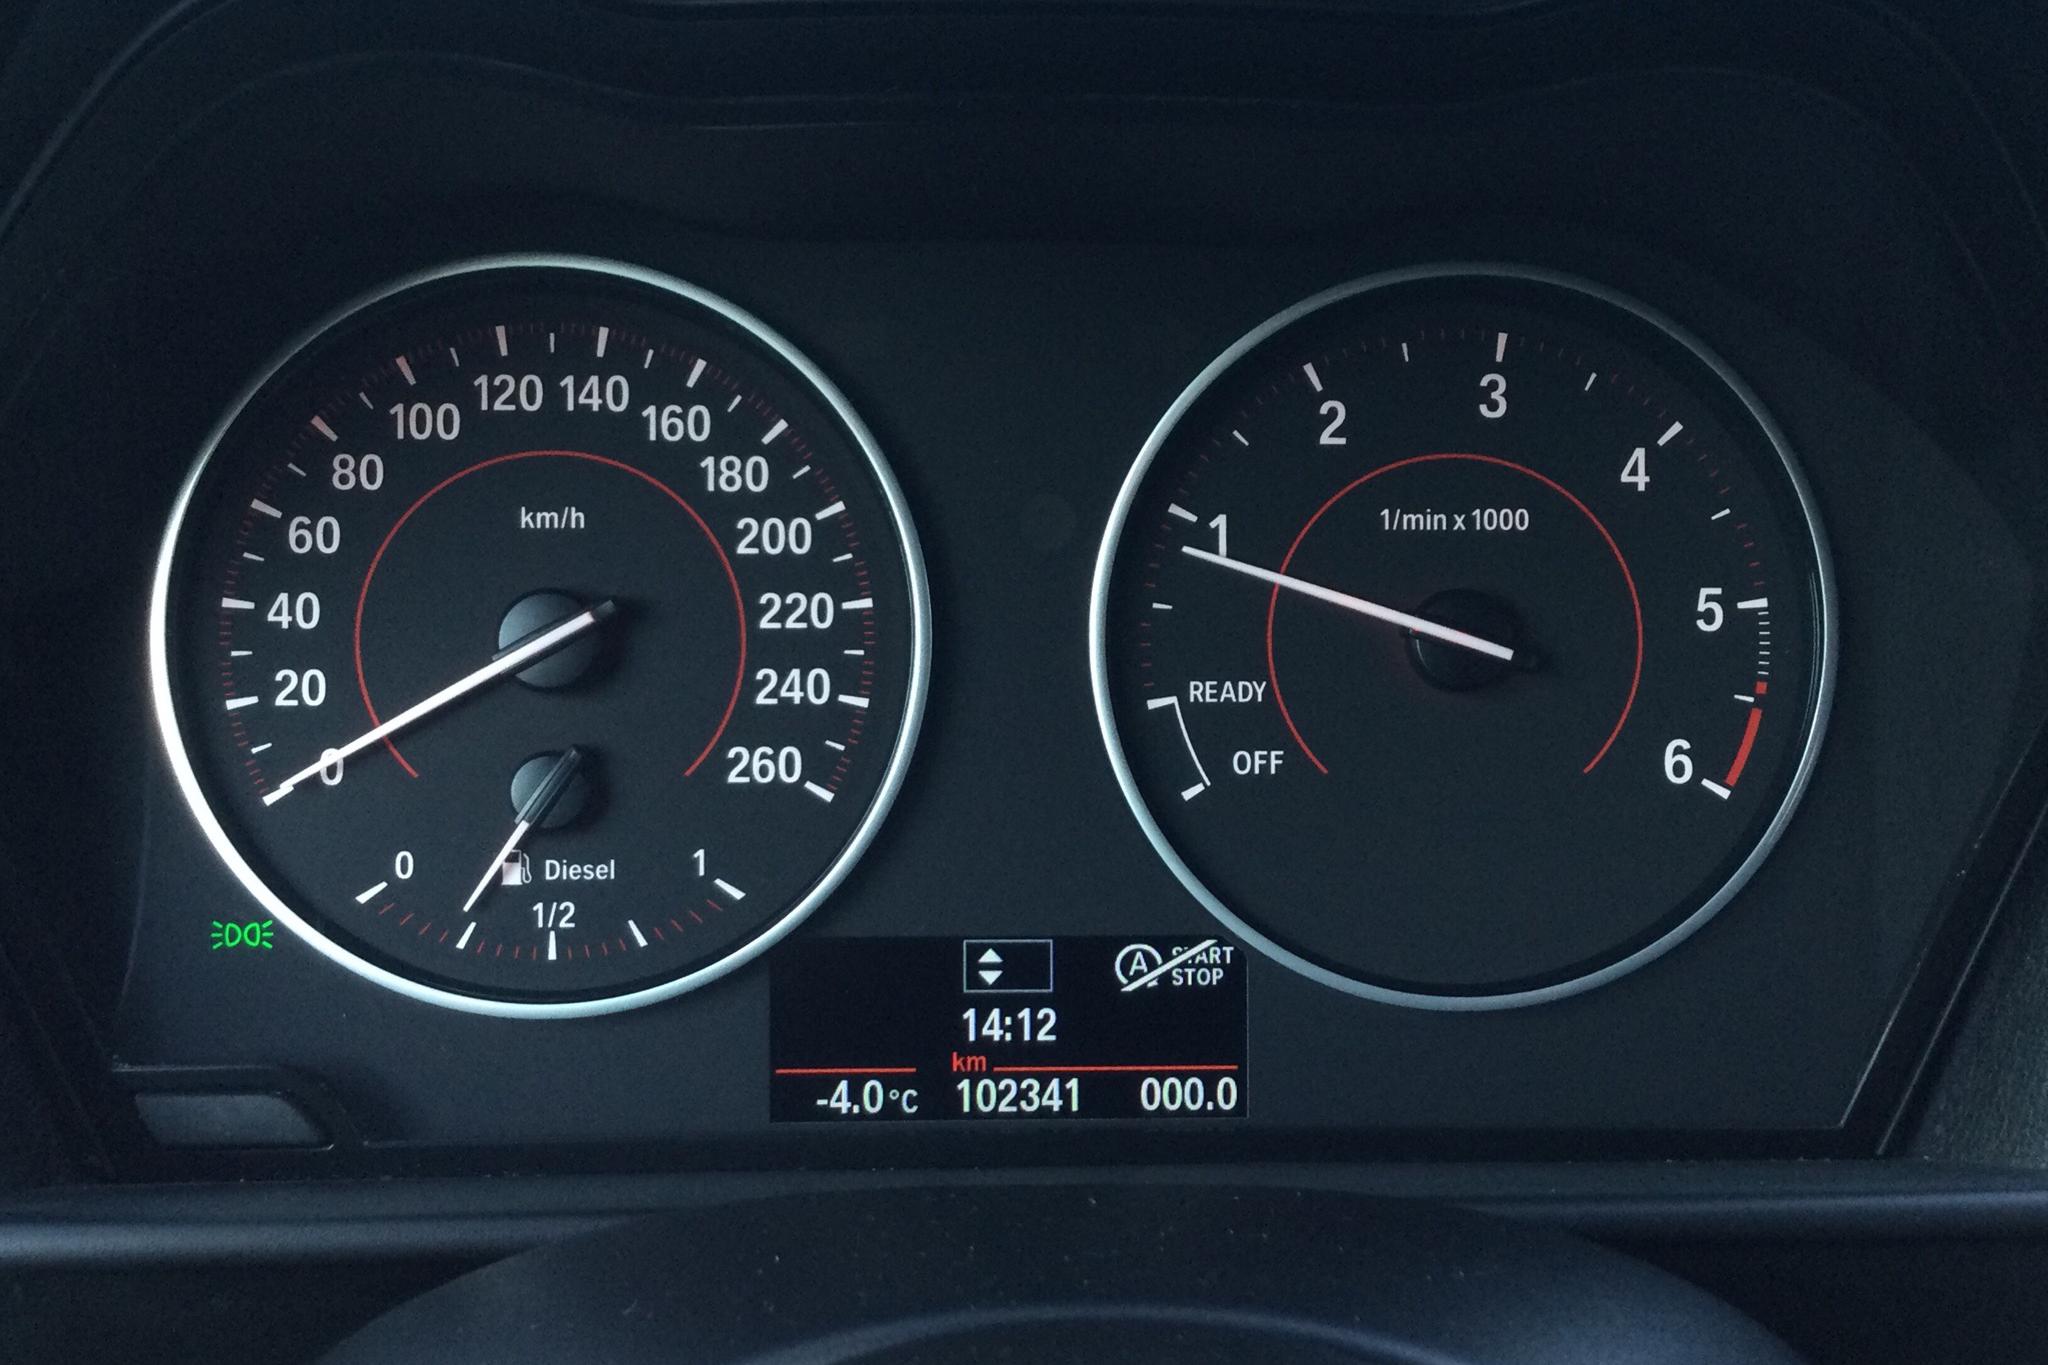 BMW 118d 5dr, F20 (143hk) - 102 340 km - Manual - white - 2014